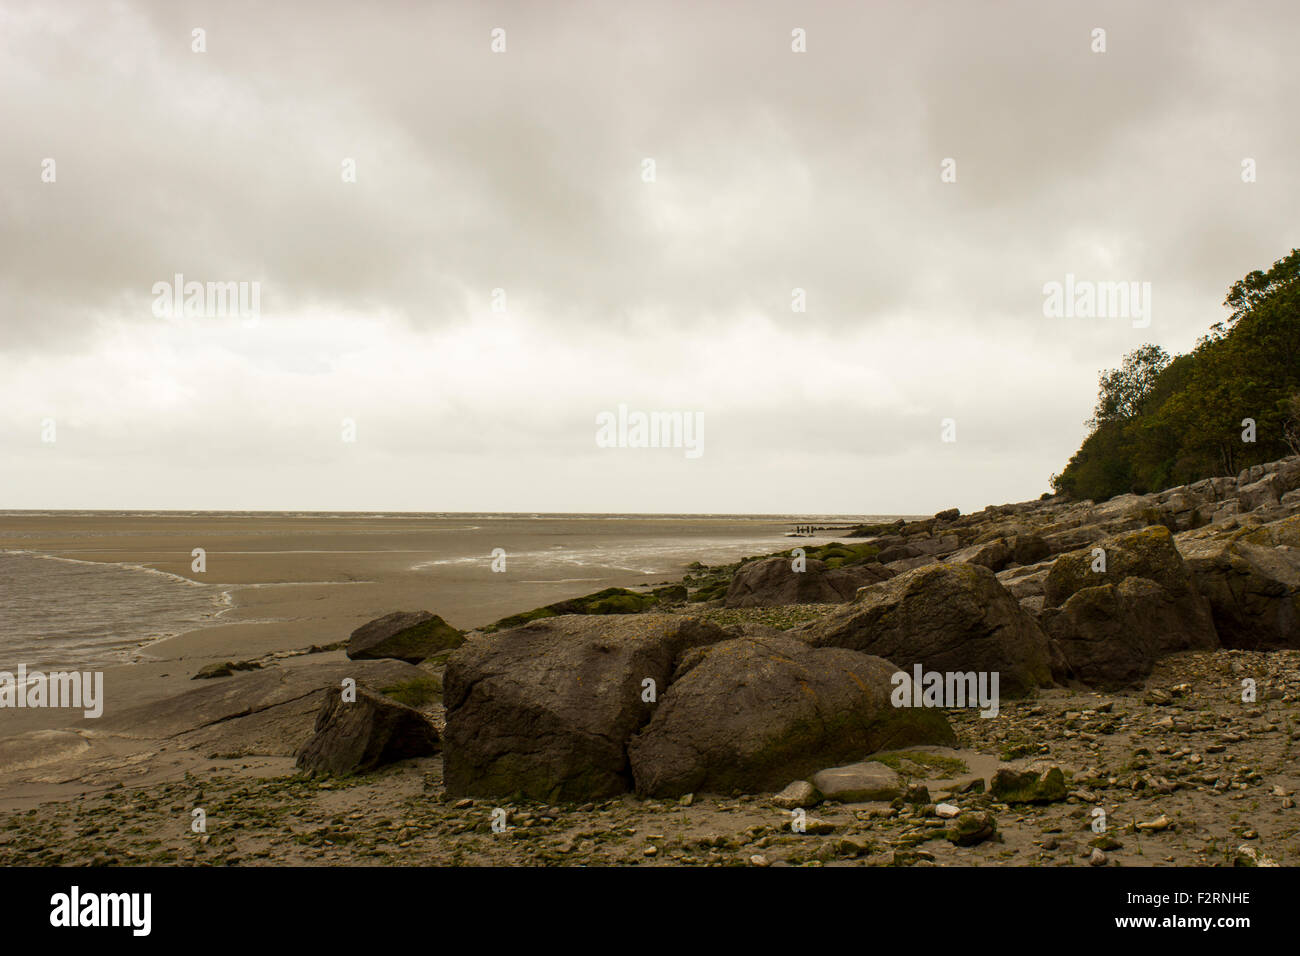 Das Meer in Morecambe Bay. Felsen am Strand, der über das Meer mit einem wolkigen Himmel schwebt über der Szene sieht. Stockfoto